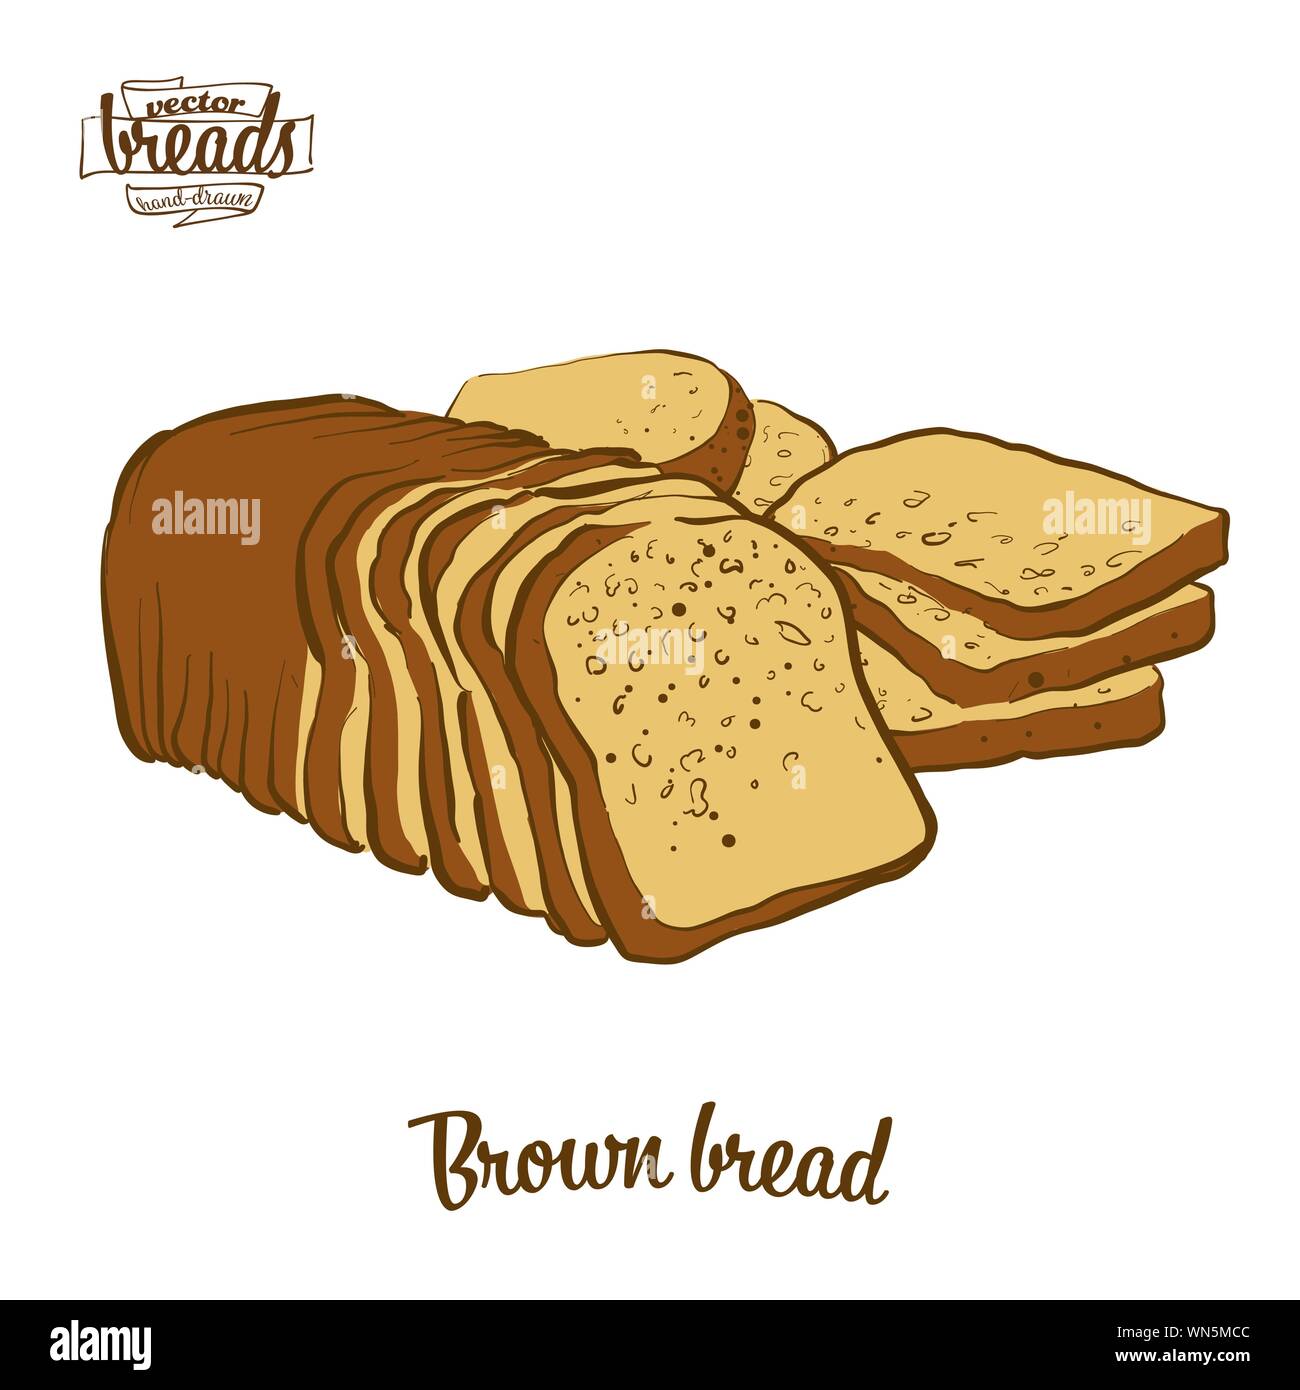 Disegno colorato marrone del pane di pane. Illustrazione Vettoriale di segale o pane di frumento alimenti, usualmente noto in Irlanda. Pane colorato schizzi. Illustrazione Vettoriale